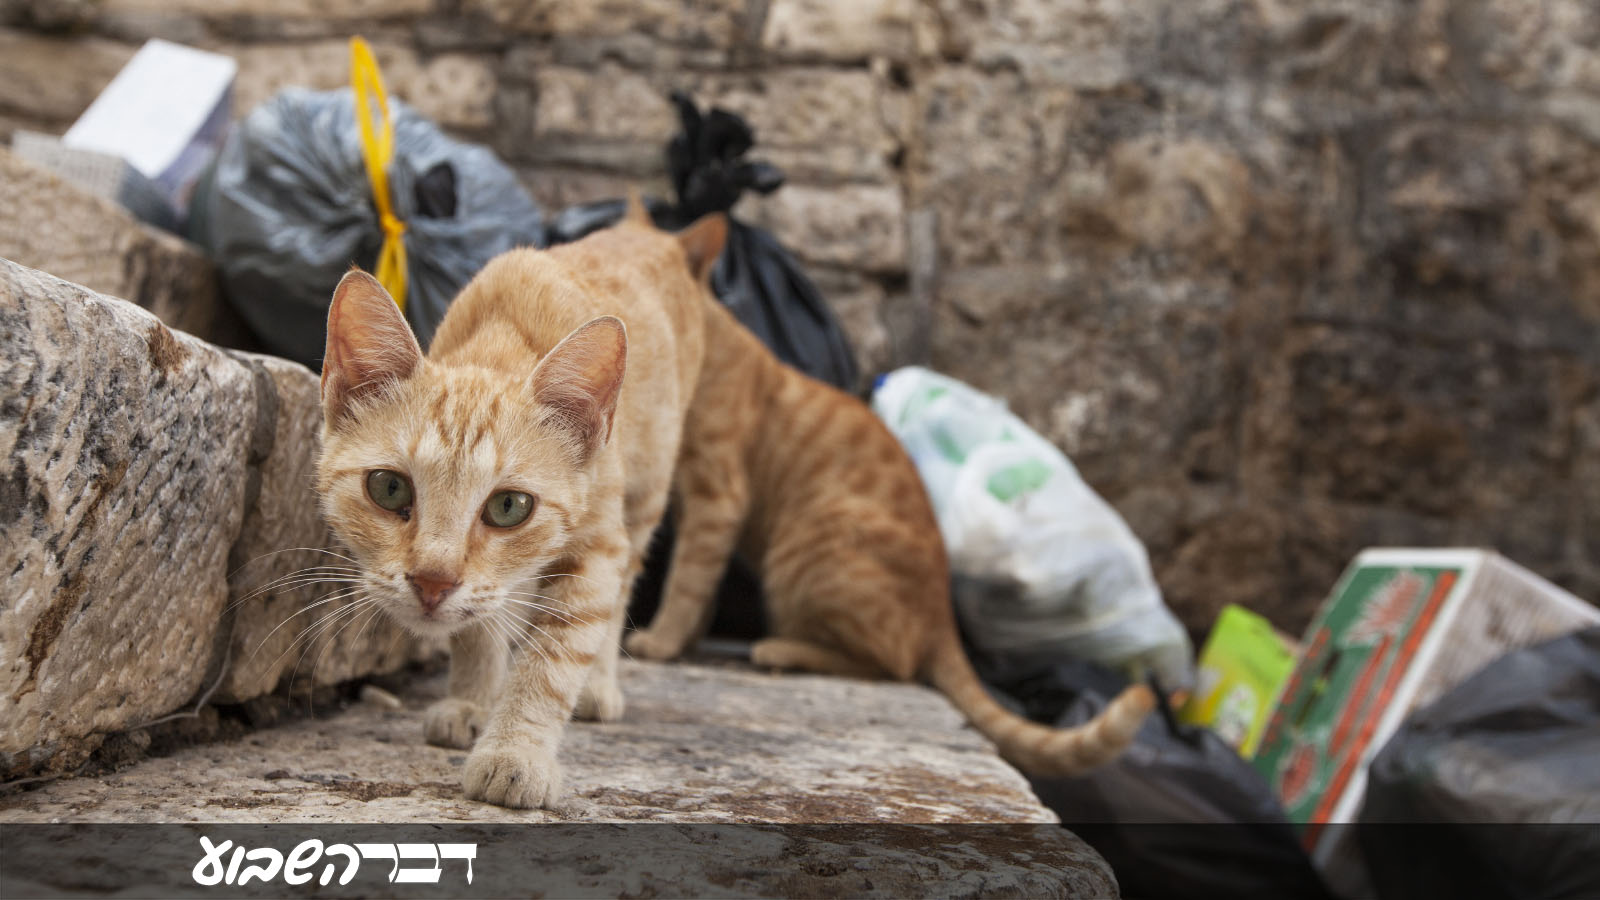 חתול רחוב בירושלים. ארכיון למצולם אין קשר לכתבה. (צילום: Shutterstock)